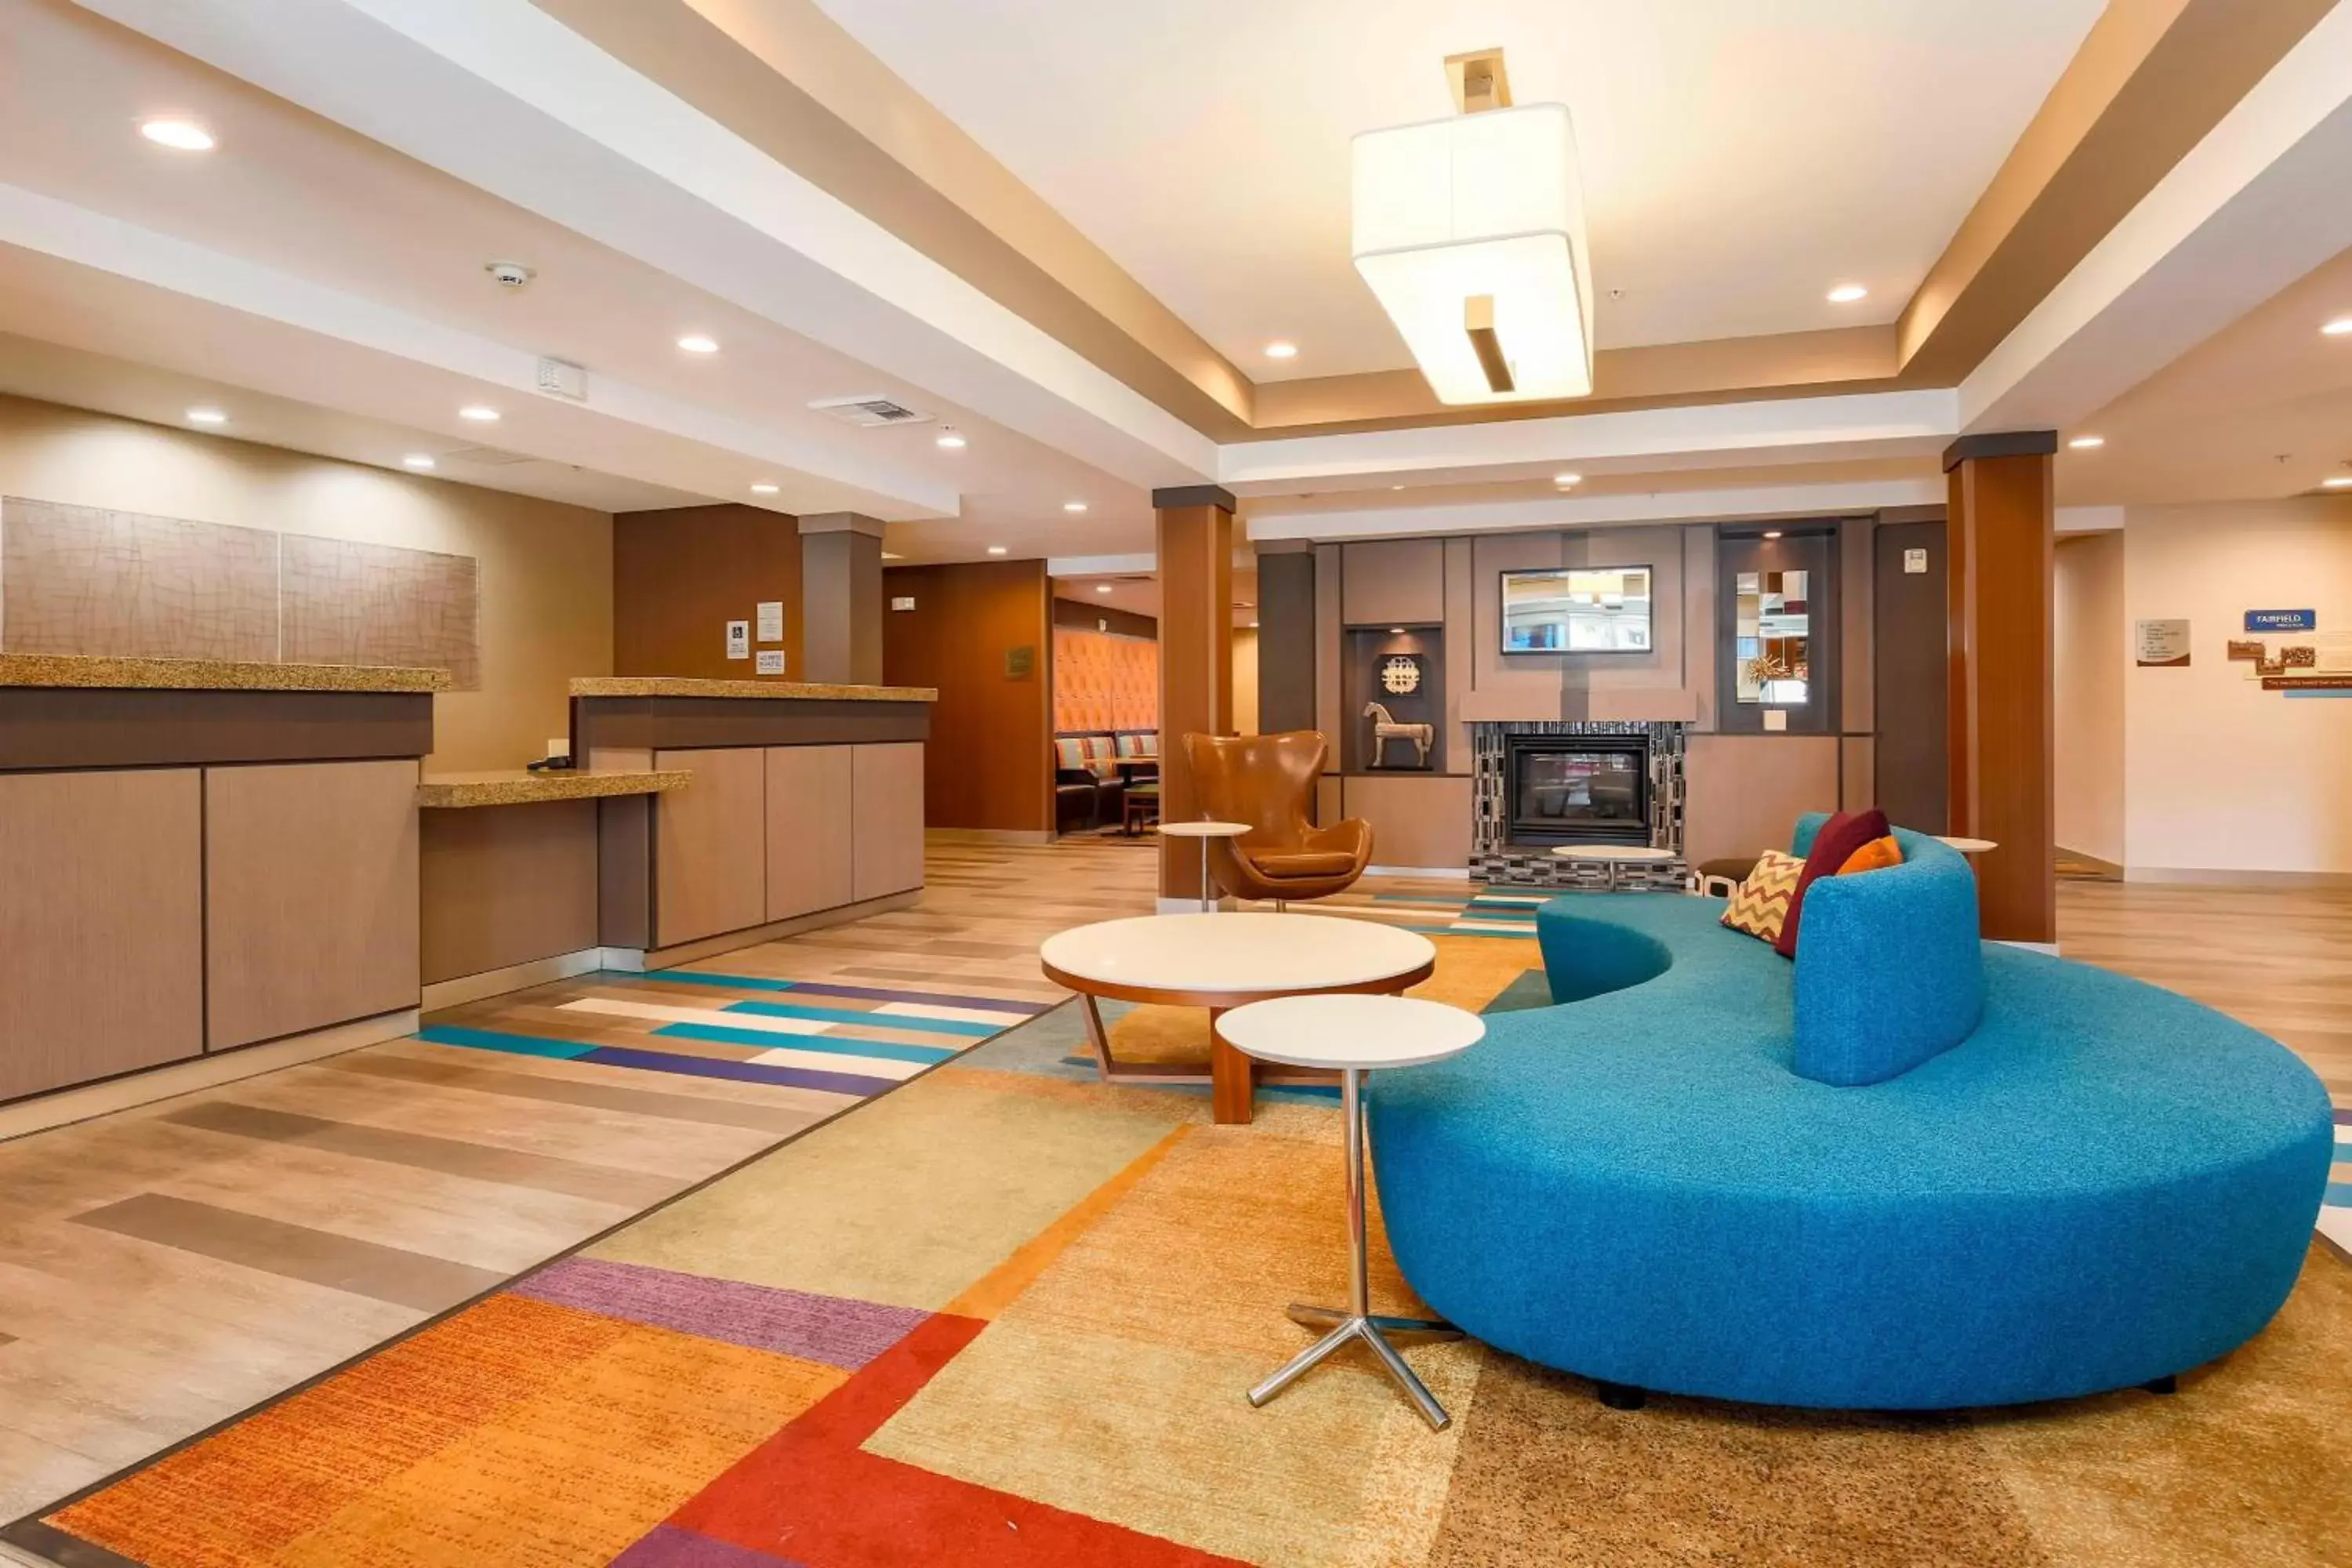 Lobby or reception, Lobby/Reception in Fairfield Inn & Suites Temecula